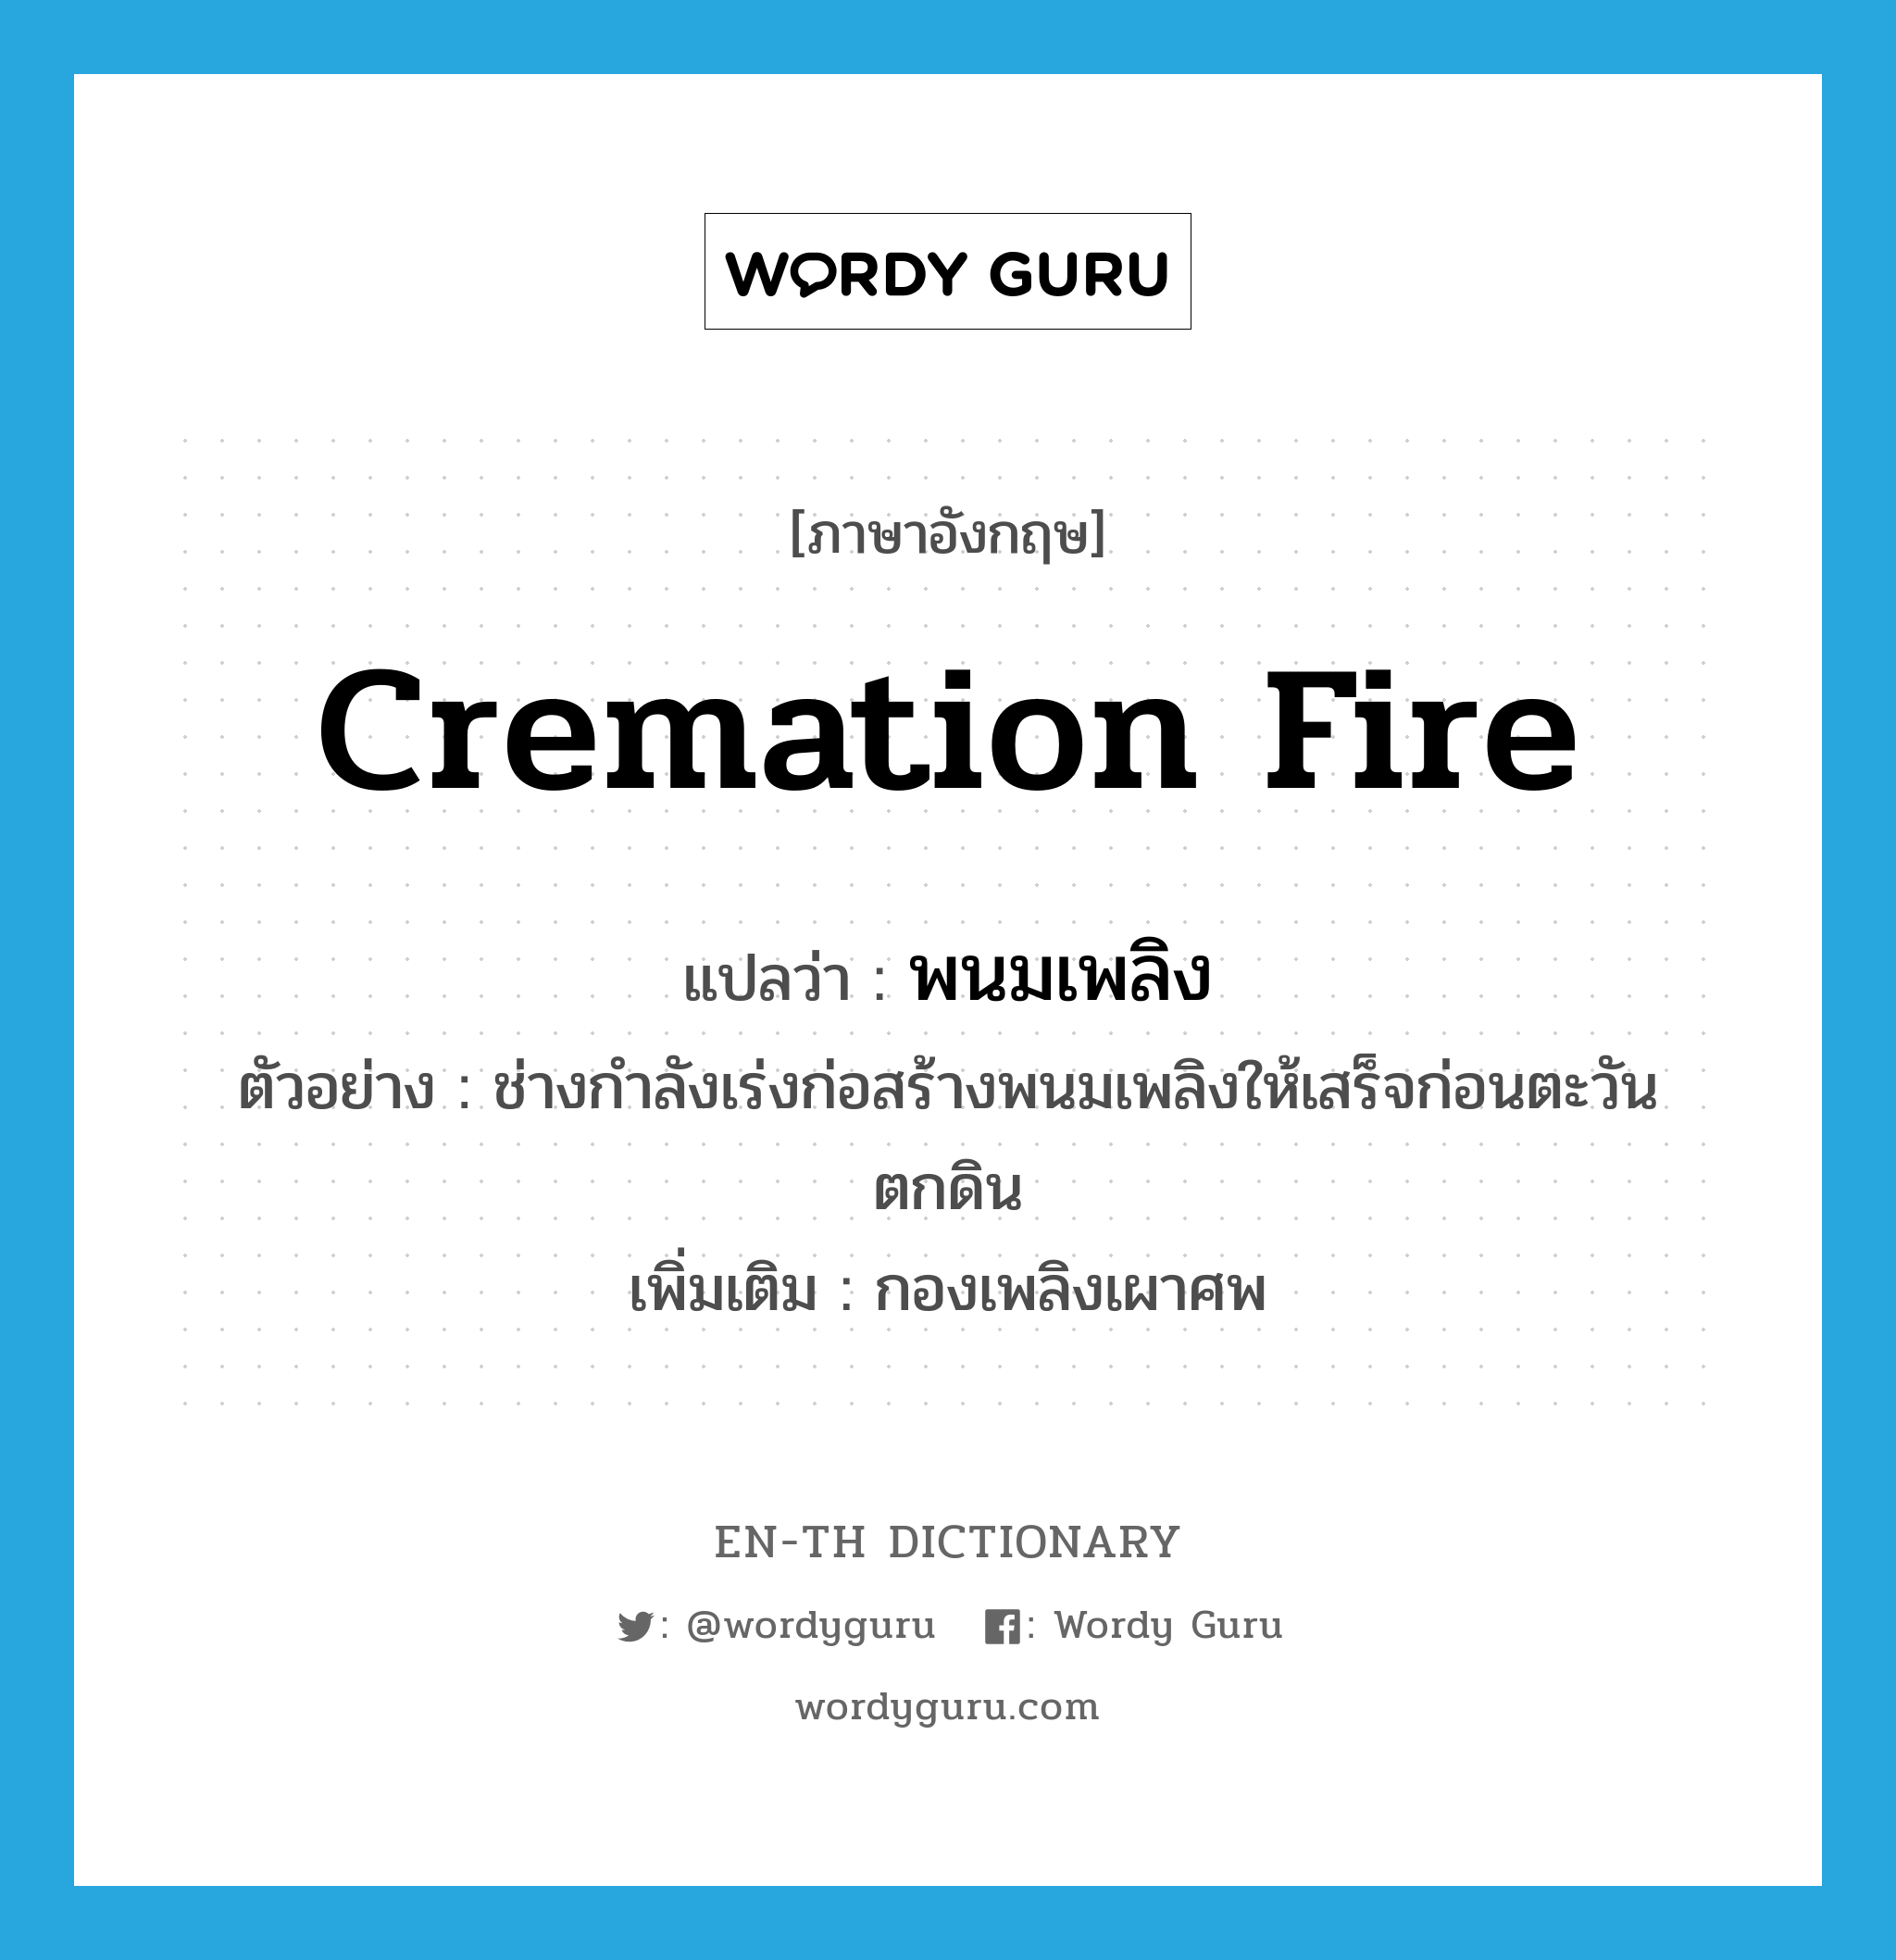 cremation fire แปลว่า?, คำศัพท์ภาษาอังกฤษ cremation fire แปลว่า พนมเพลิง ประเภท N ตัวอย่าง ช่างกำลังเร่งก่อสร้างพนมเพลิงให้เสร็จก่อนตะวันตกดิน เพิ่มเติม กองเพลิงเผาศพ หมวด N